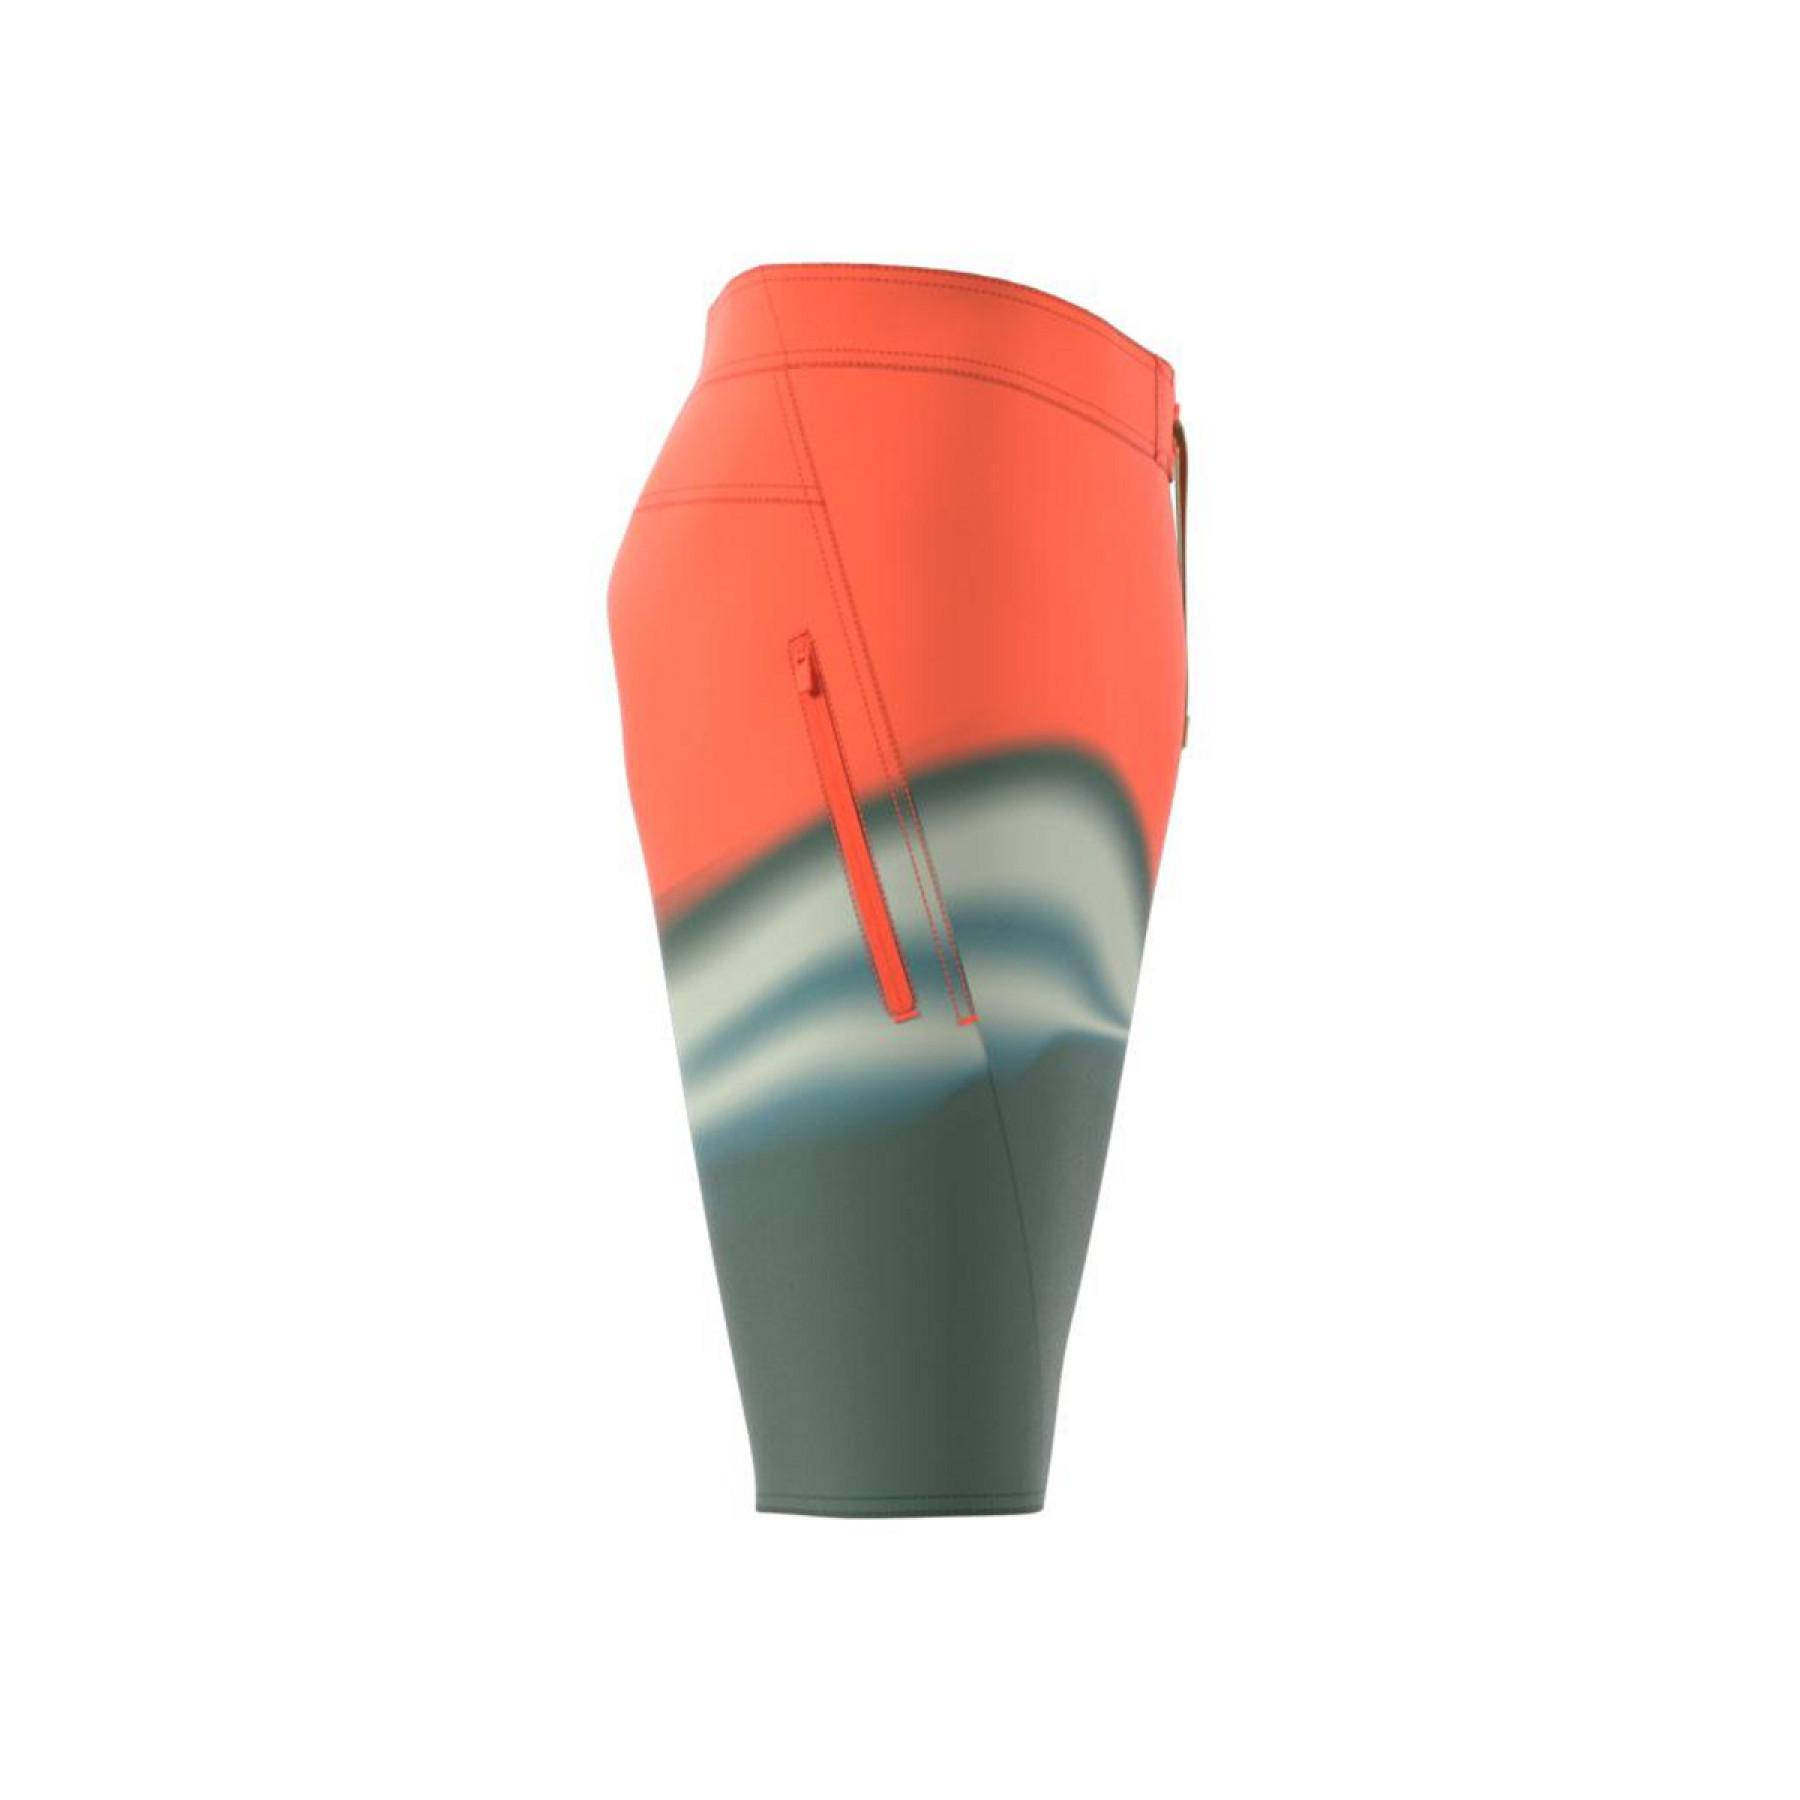 Pantalones cortos de natación adidas KneeLength Graphic Board